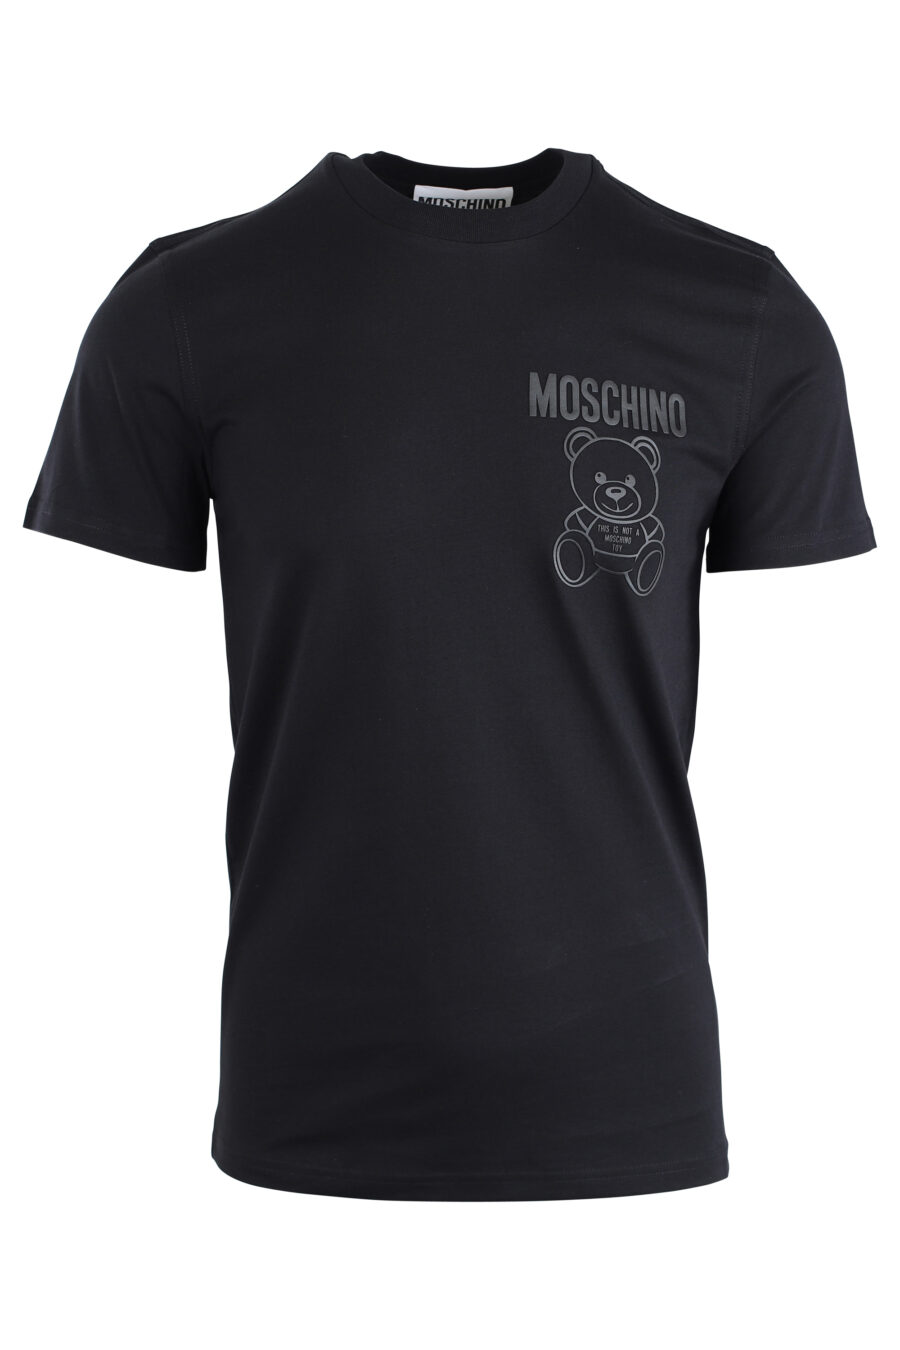 T-shirt preta com minilogo de urso monocromático - IMG 1669